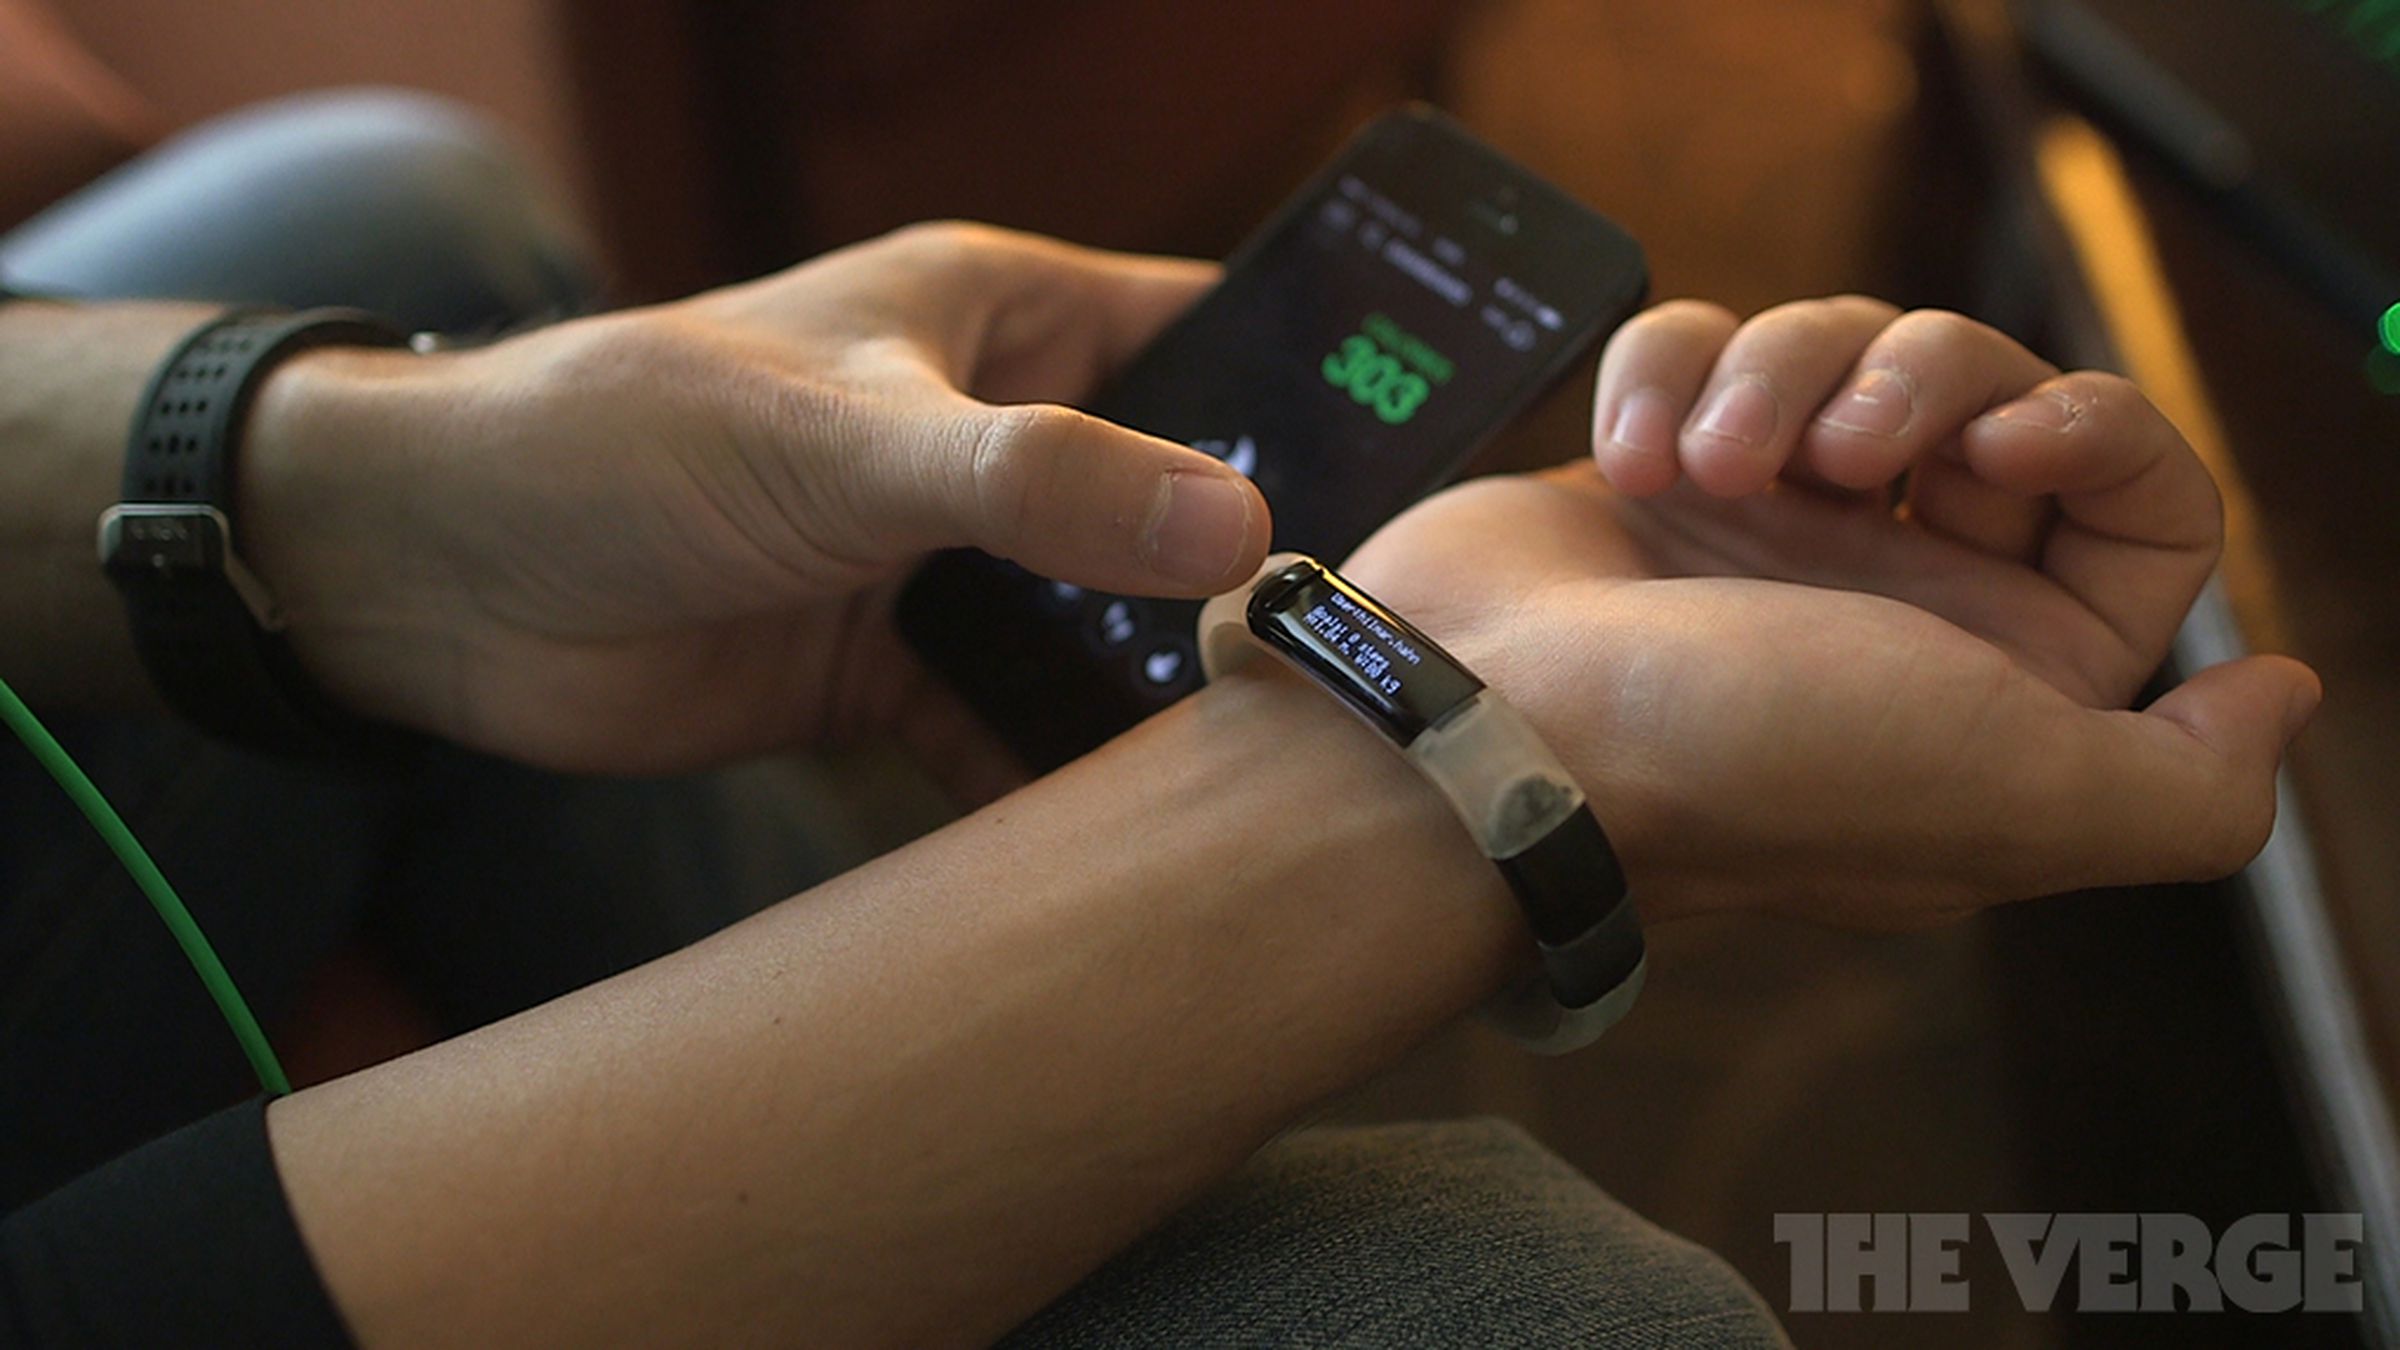 Razer Nabu smartband hands-on images